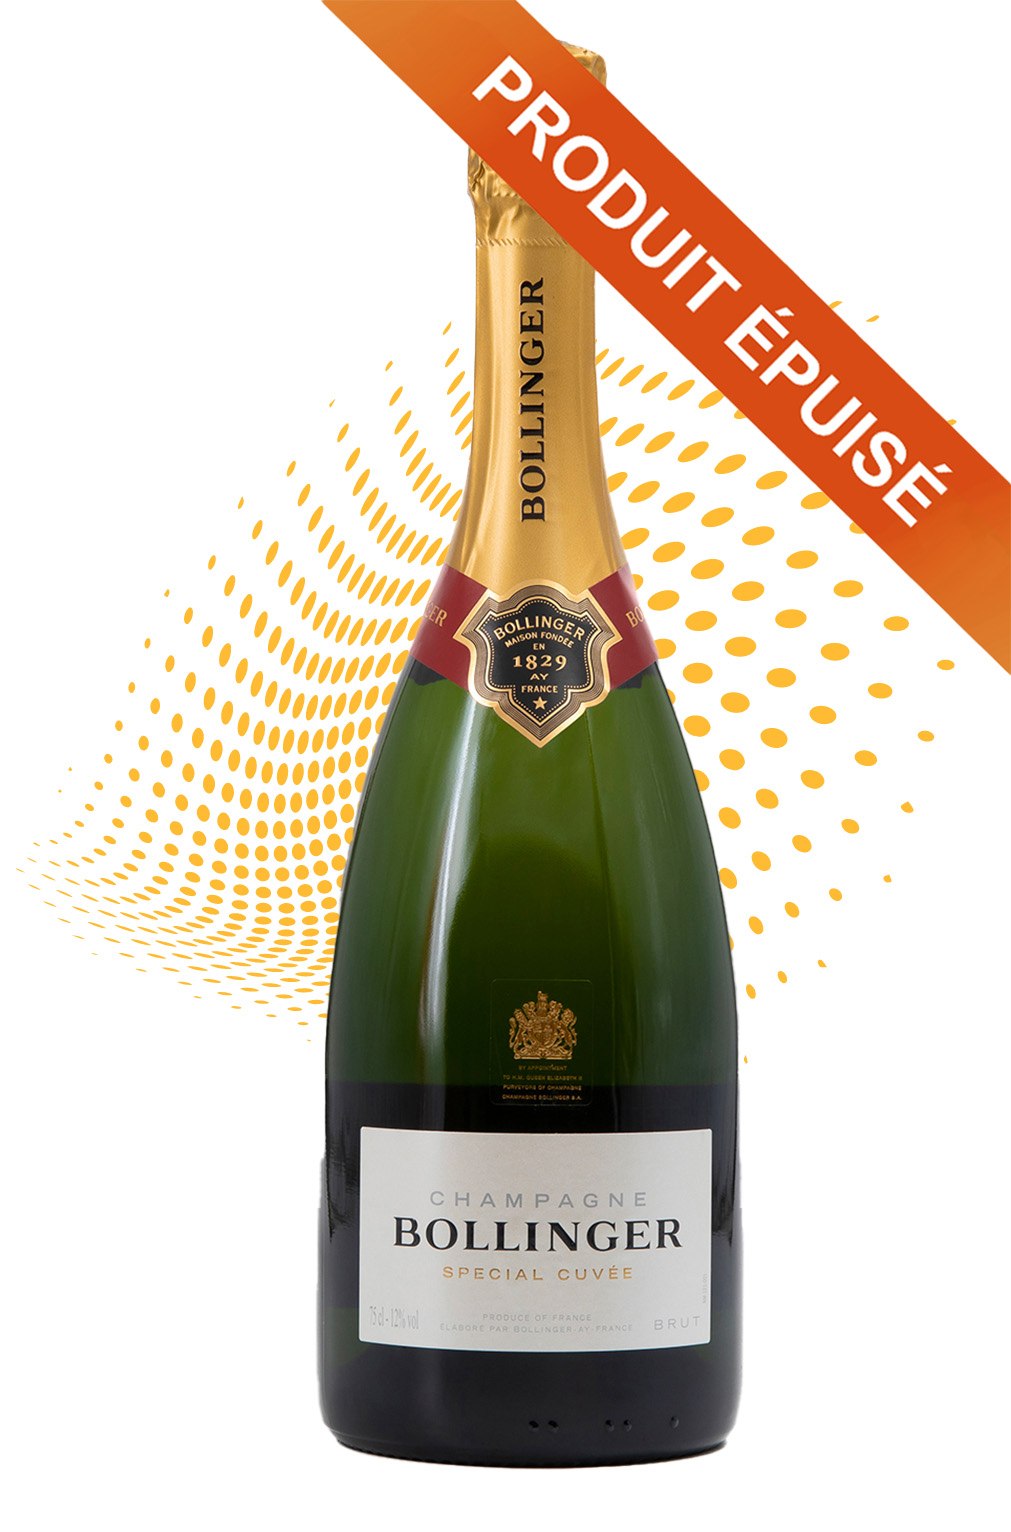 Champagne Bollinger Brut Cuvée Spéciale